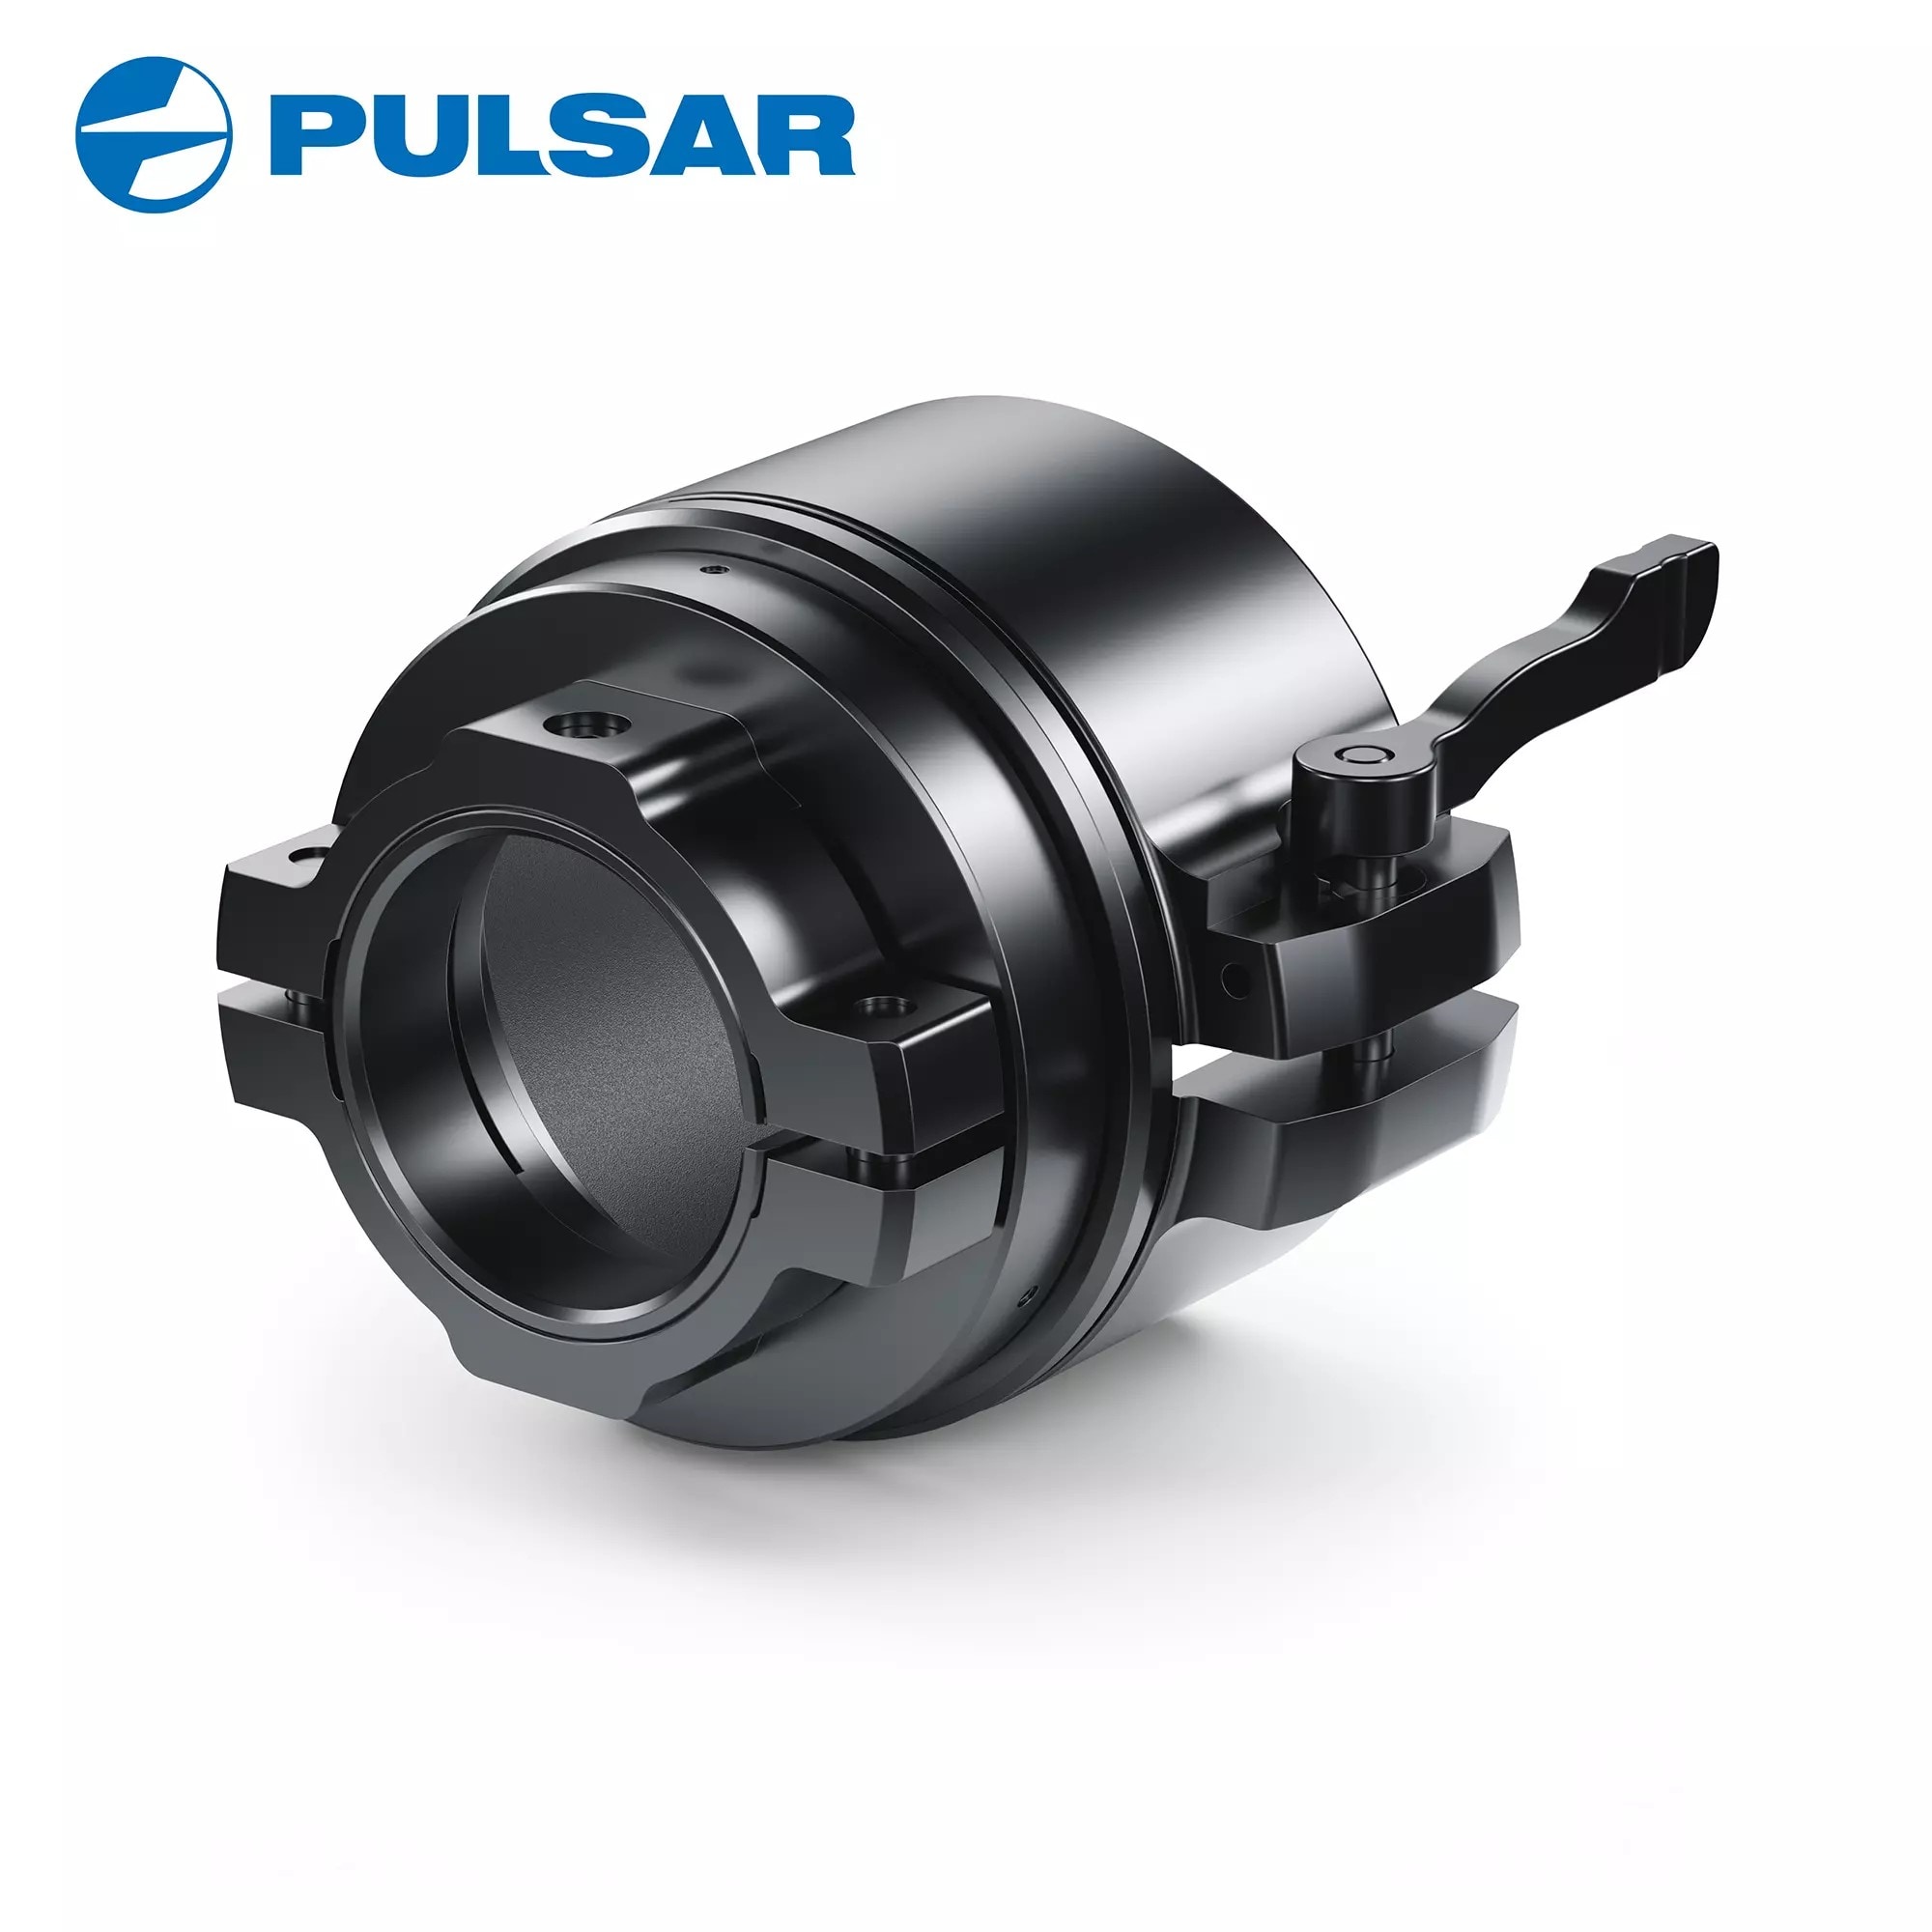 Pulsar PSP 50 MM Adapter Ring